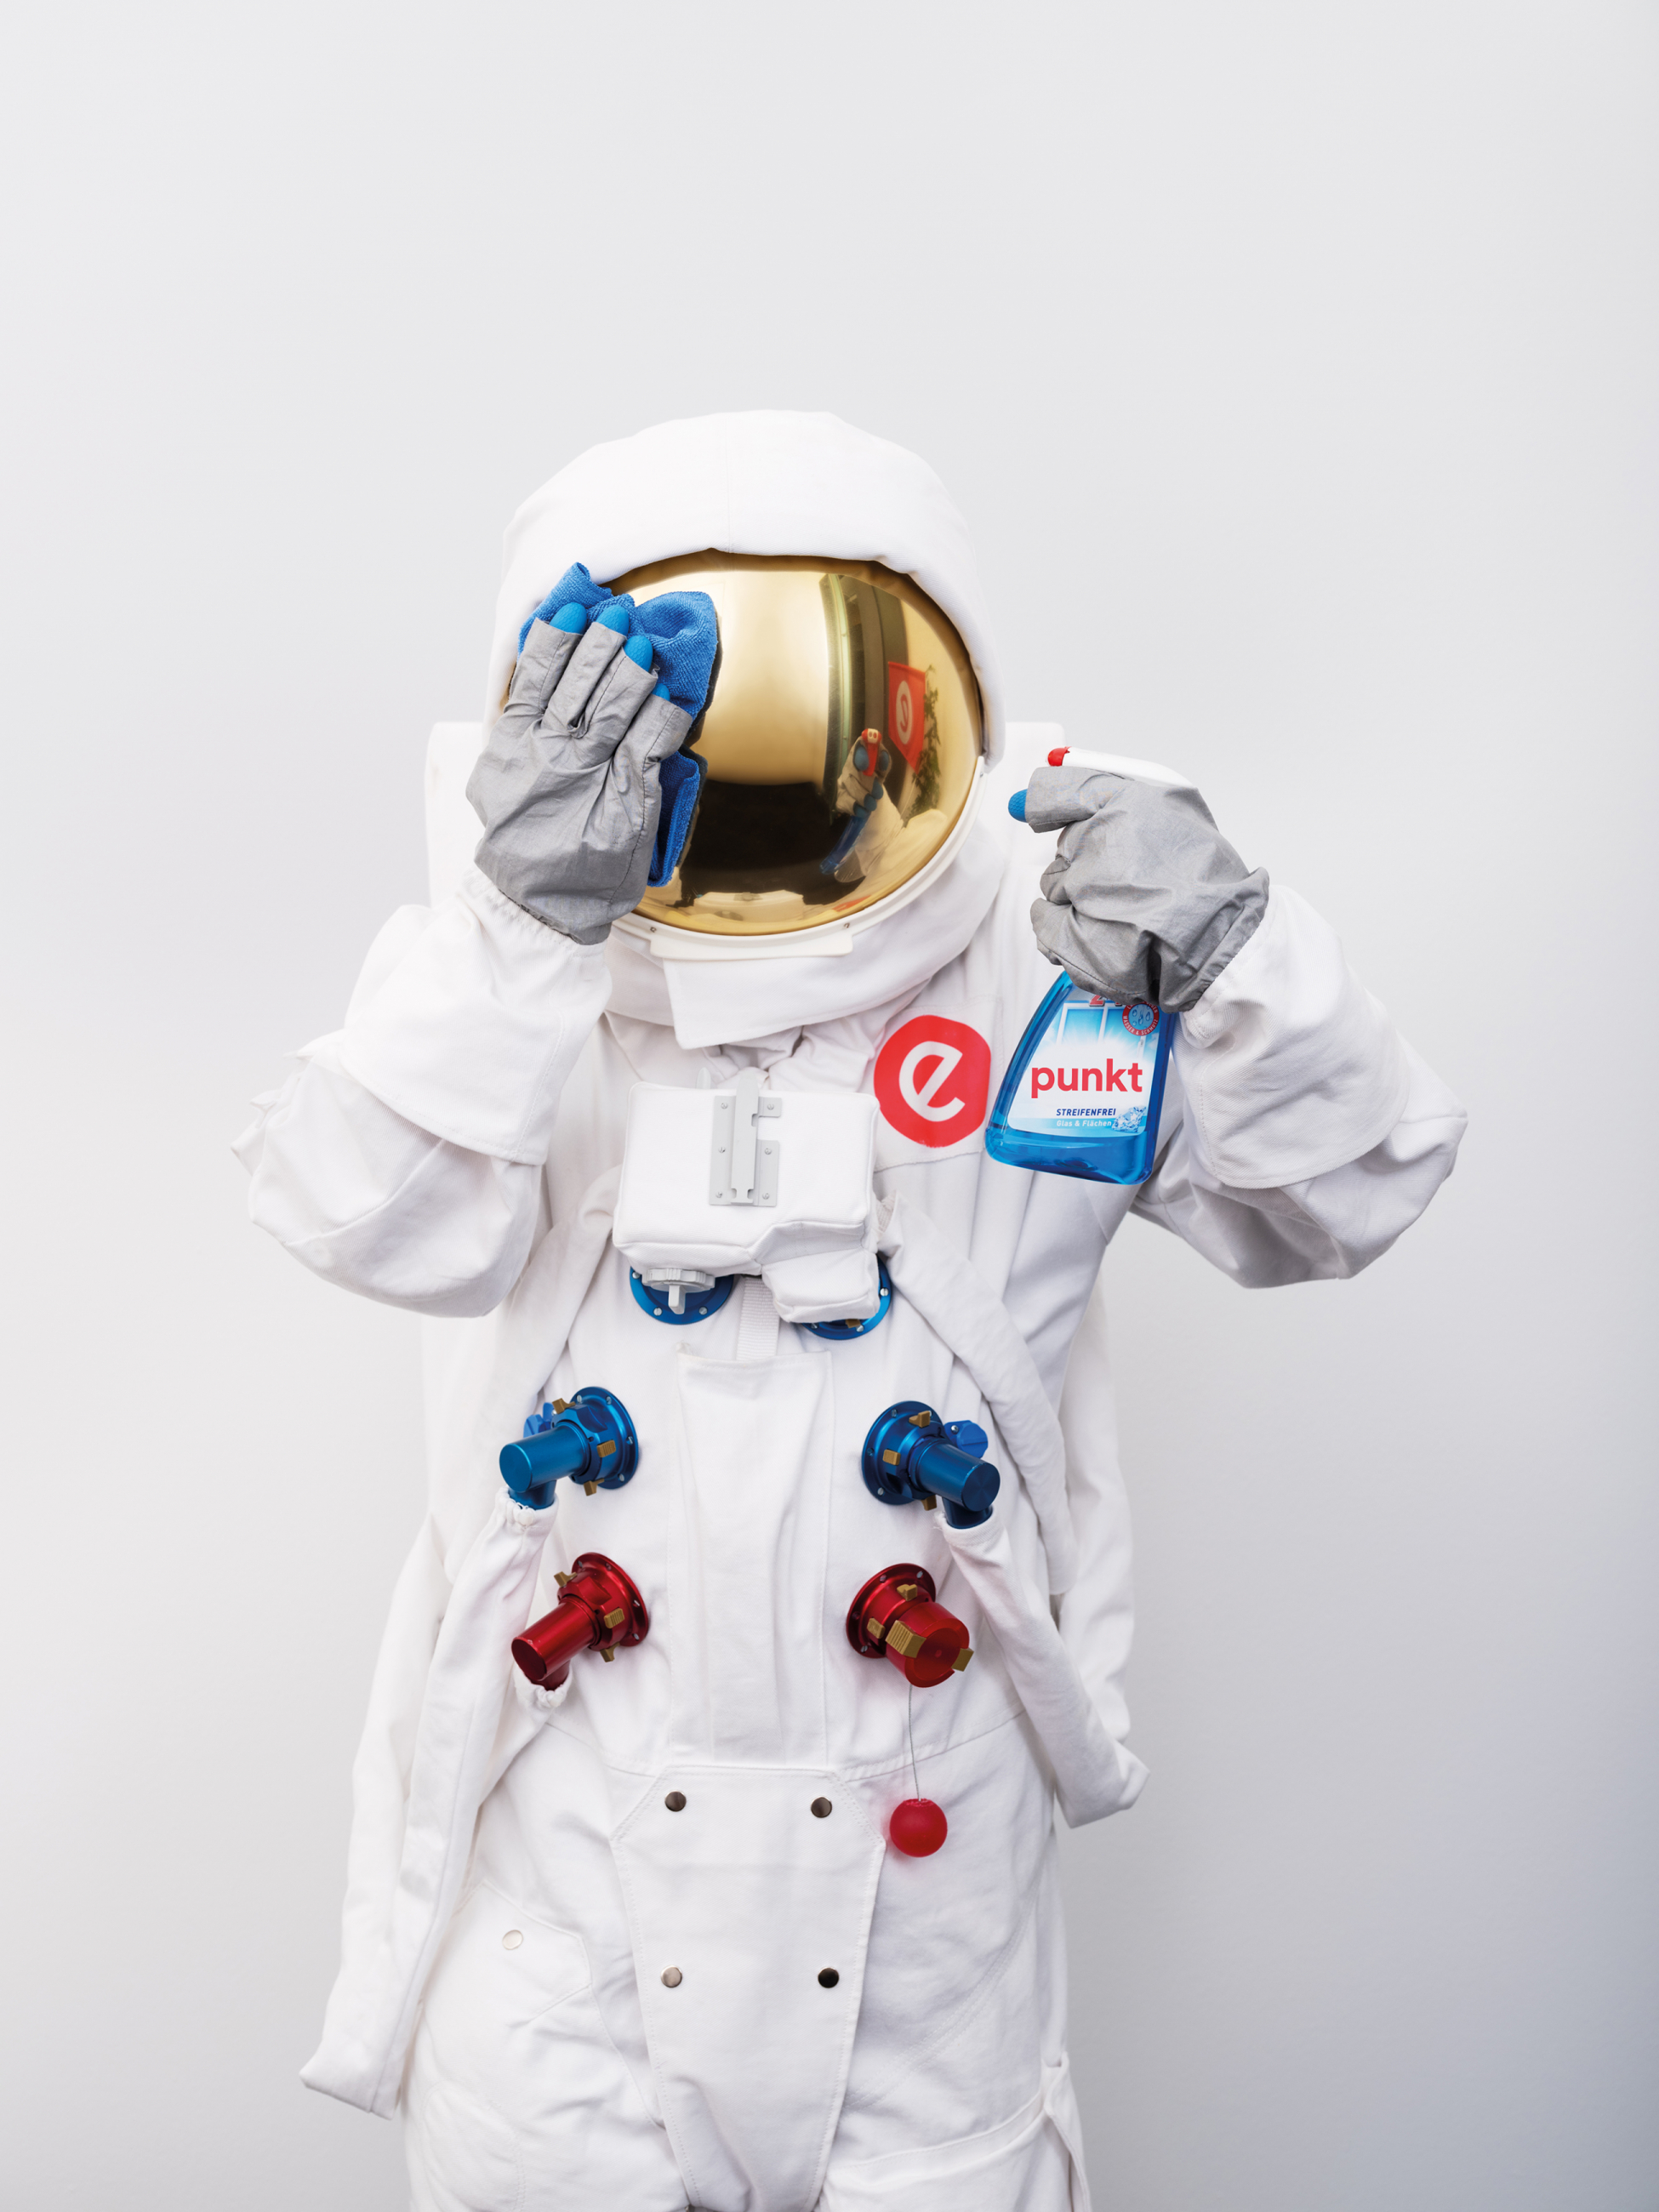 Astronaut putzt sich Visier